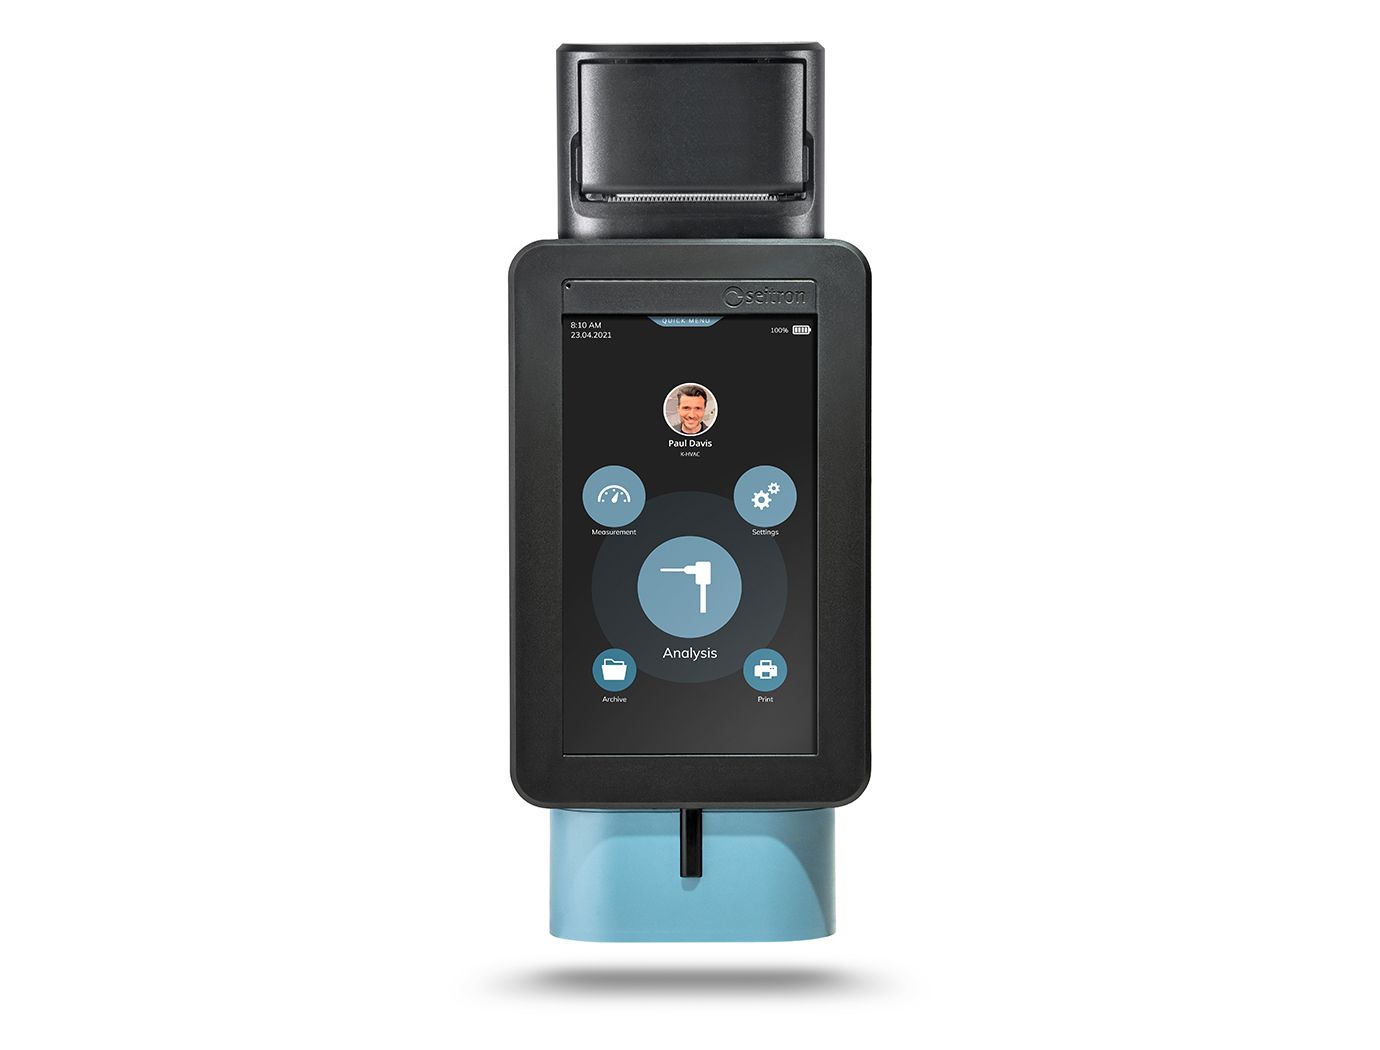 Seitron Novo 3-P analizzatore portatile di combustione - fumi 02, CO, NO con stampante integrata